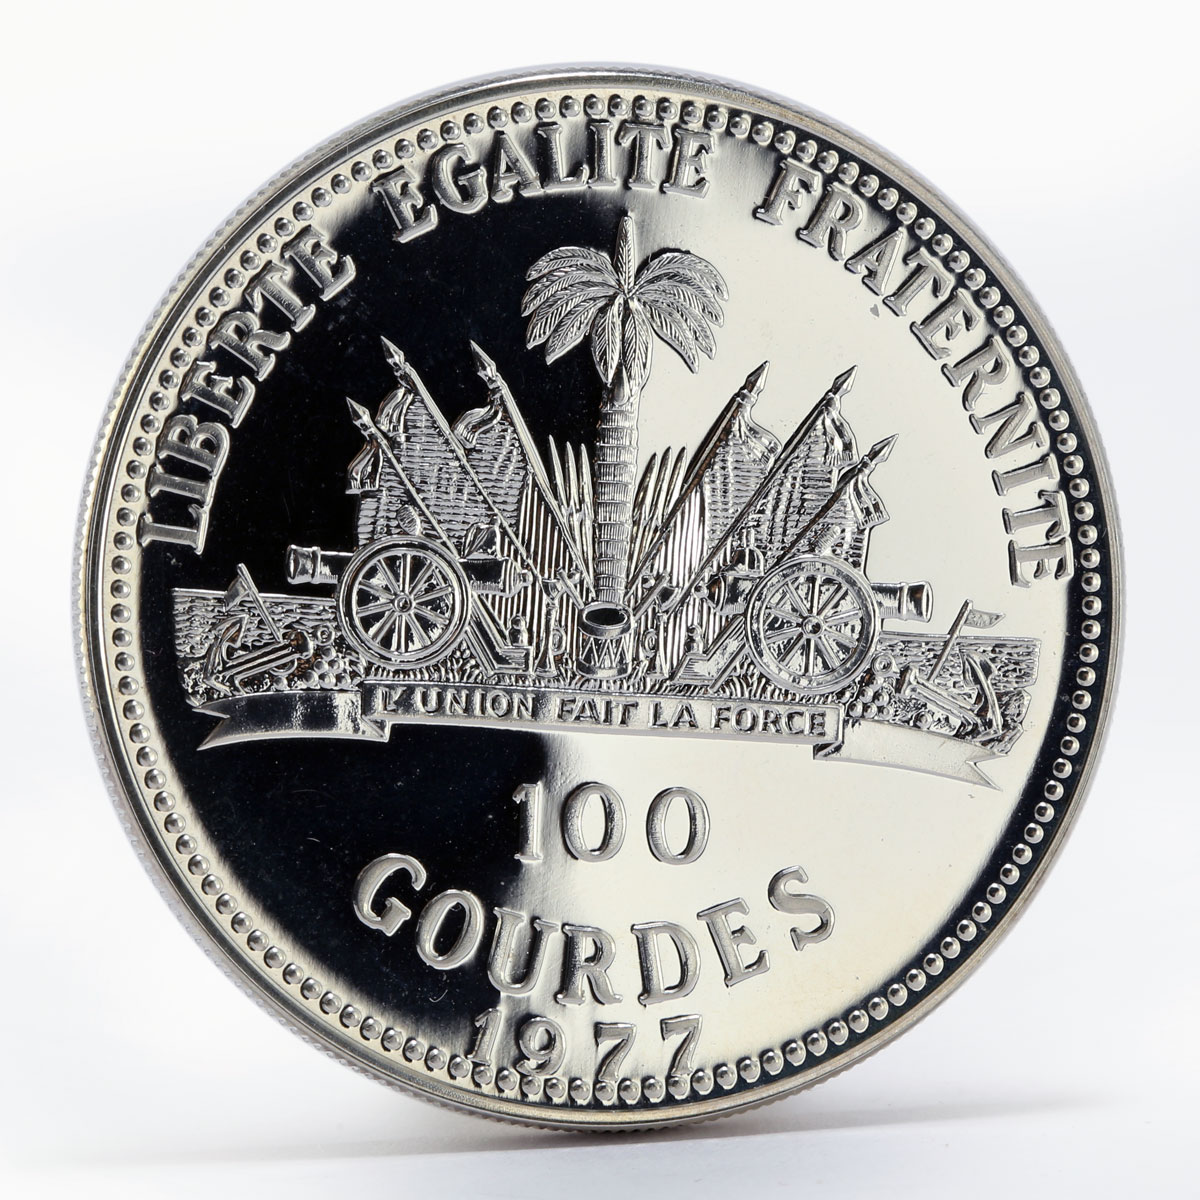 Haiti 100 Gourdes Sadat-Begin Peace Talks proof silver coin 1977